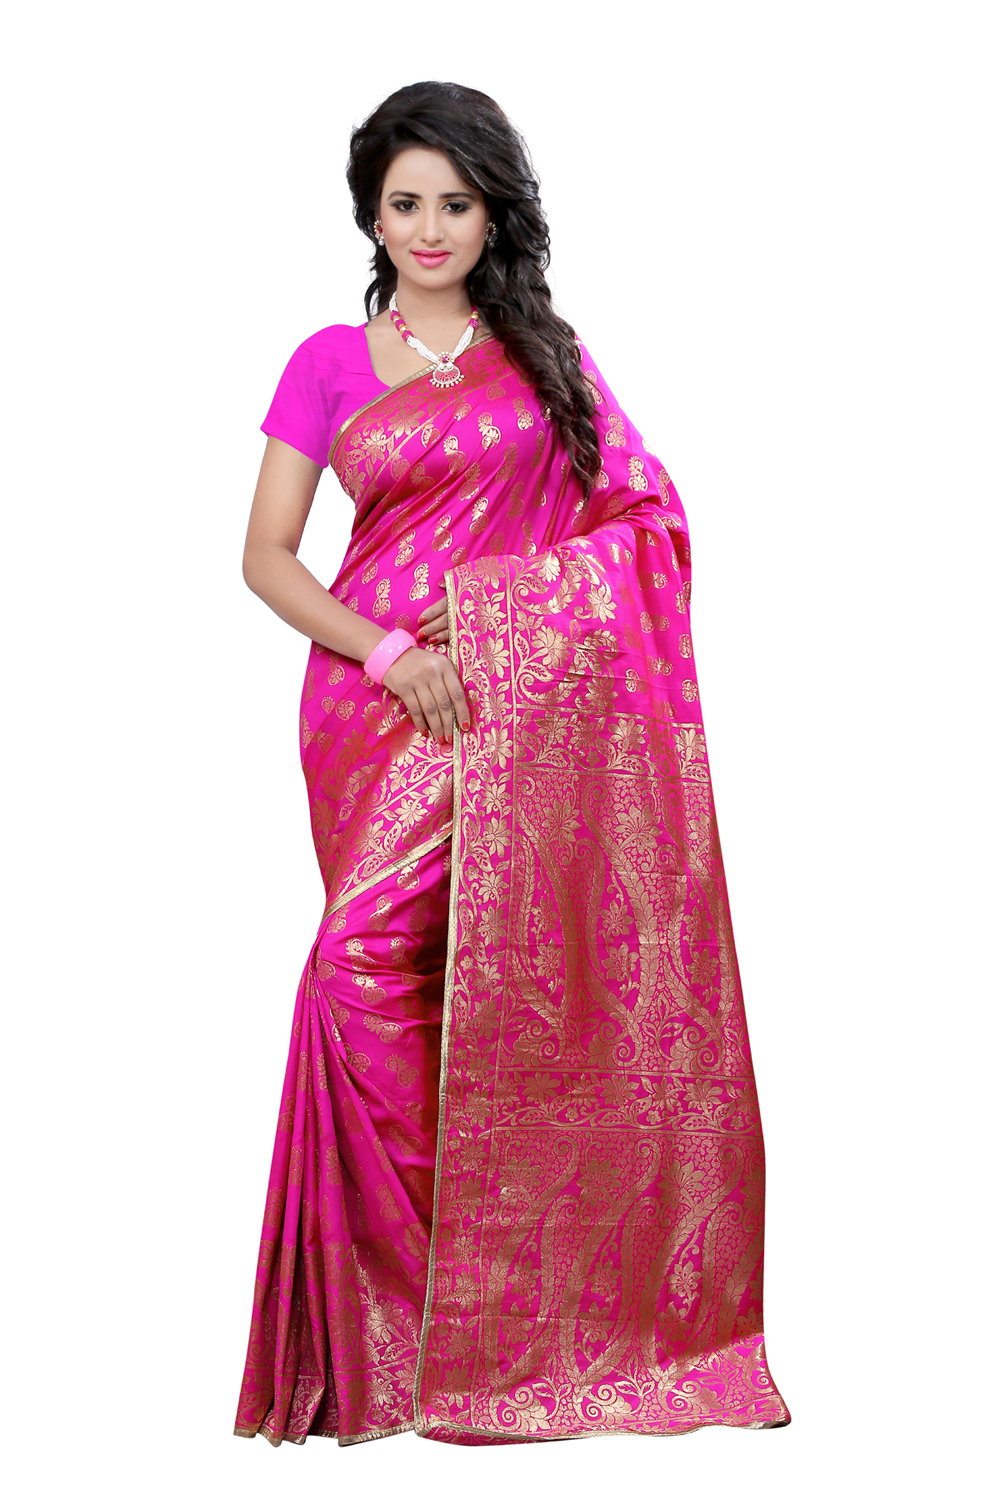 banarasi-sarees-designs-9